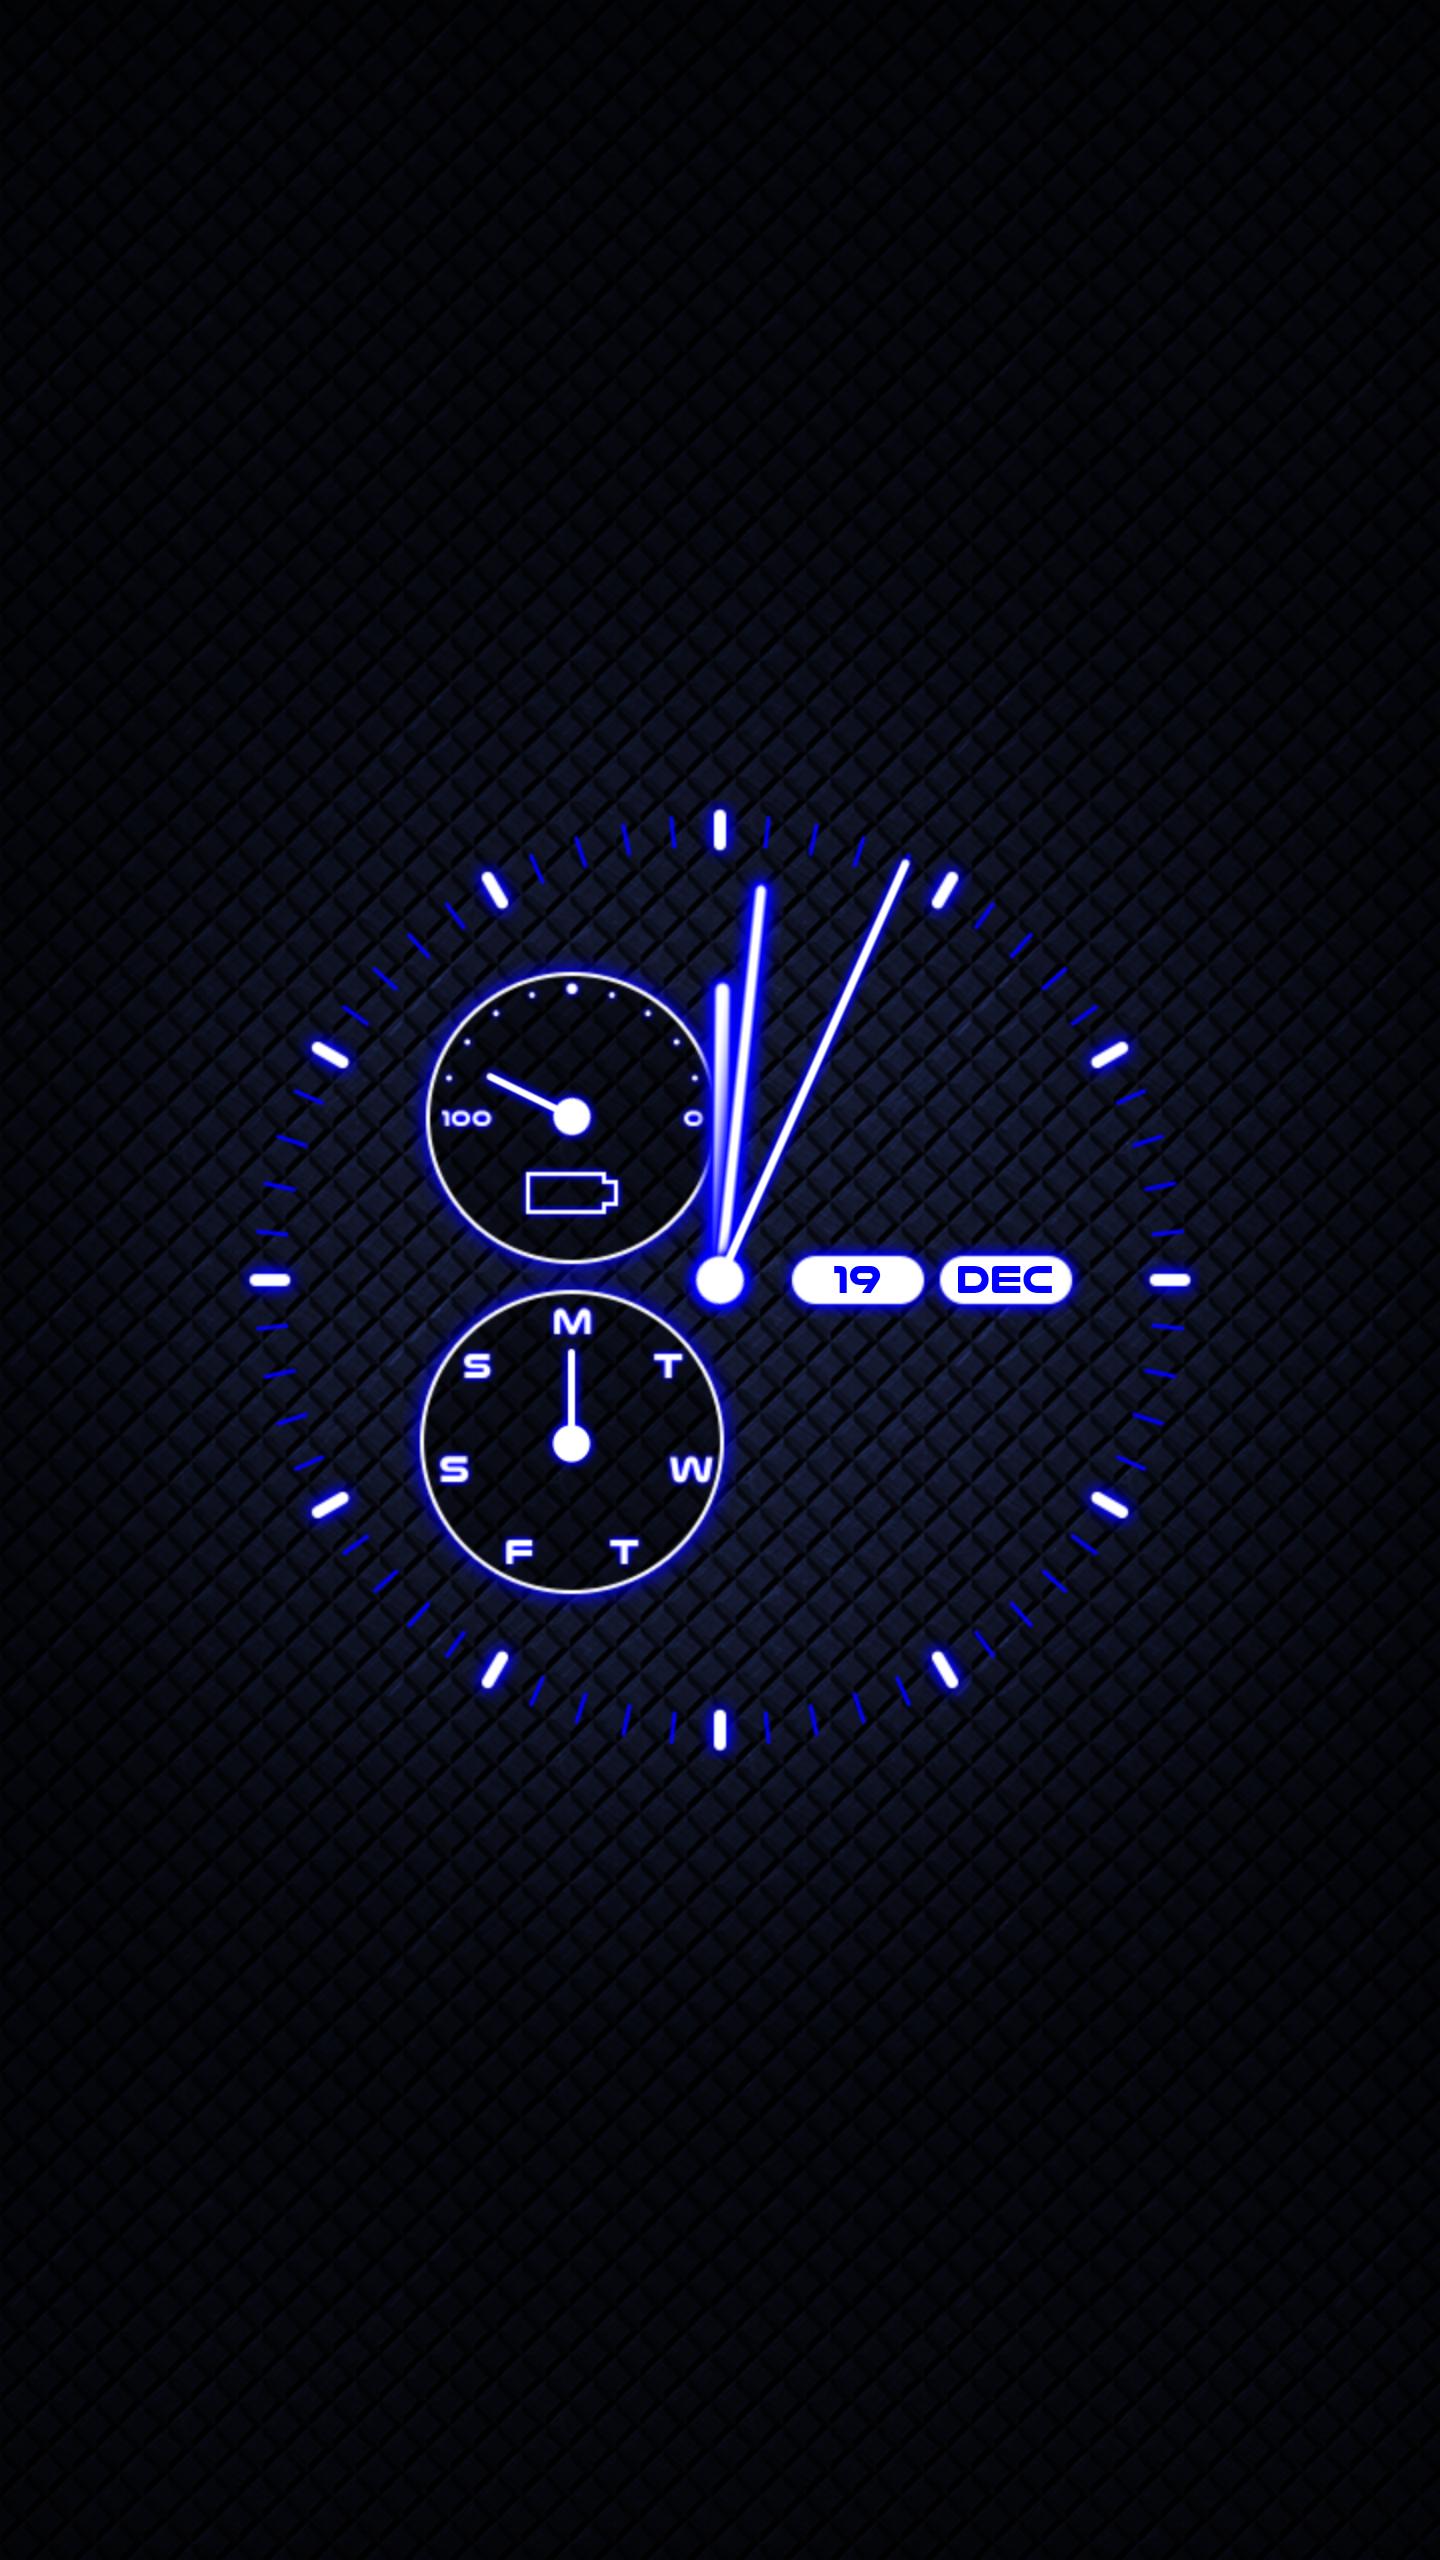 Бесплатные обои на андроид часы. Аналоговые часы для андроид. Стильные часы на заставку. Аналоговые часы на экран смартфона. Красивые аналоговые часы для андроид.